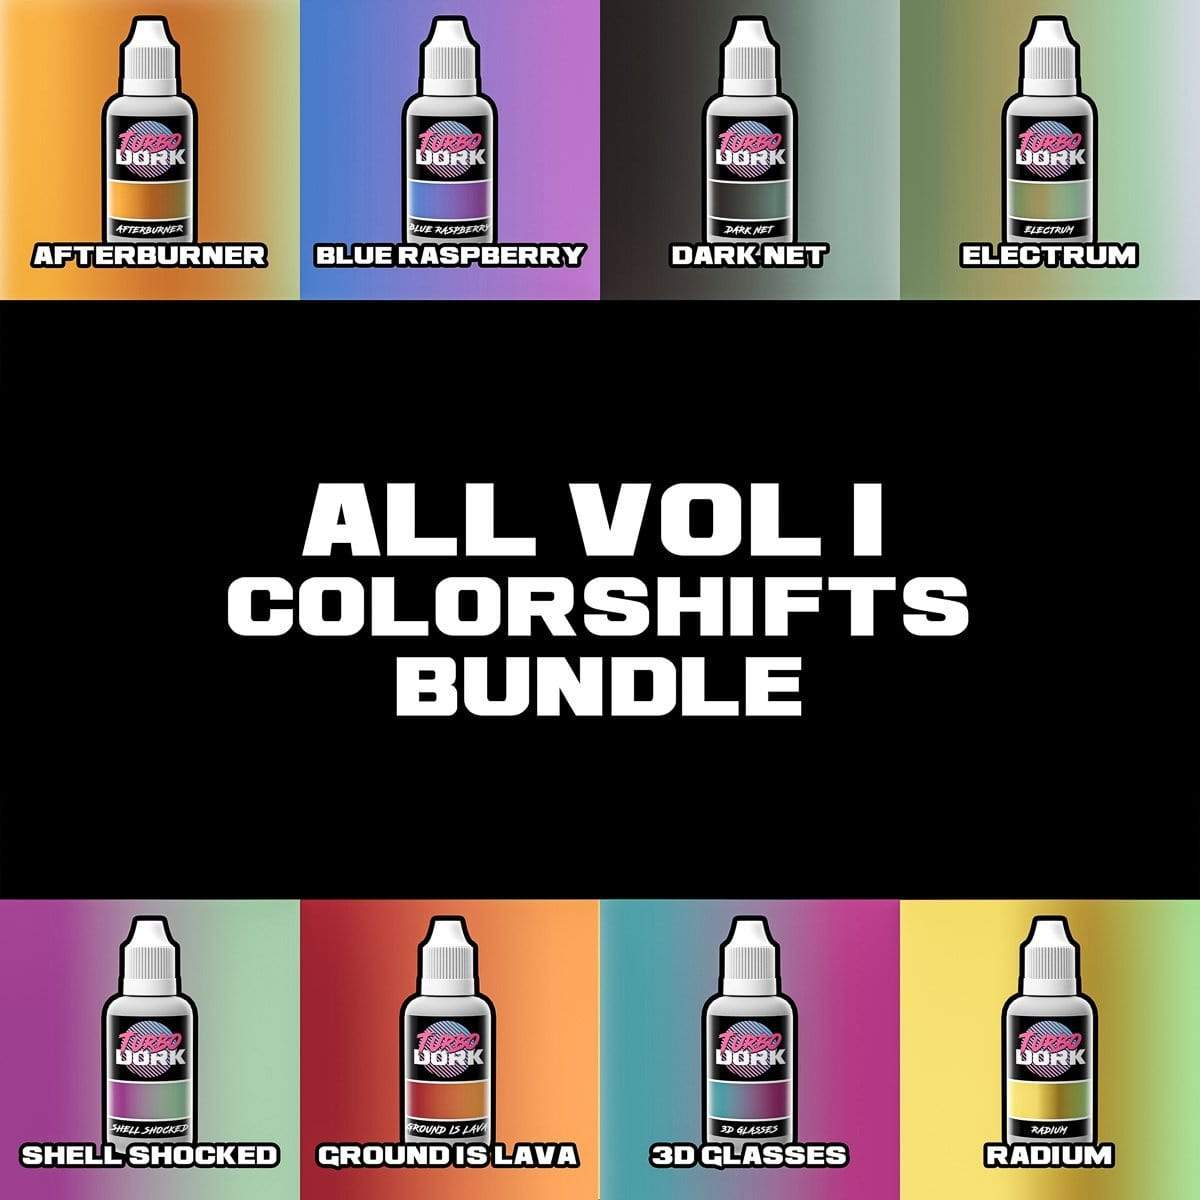 Volume 1 Colorshift Acrylic Paints Bundle Colorshift Turbo Dork Exit 23 Games Volume 1 Colorshift Acrylic Paints Bundle